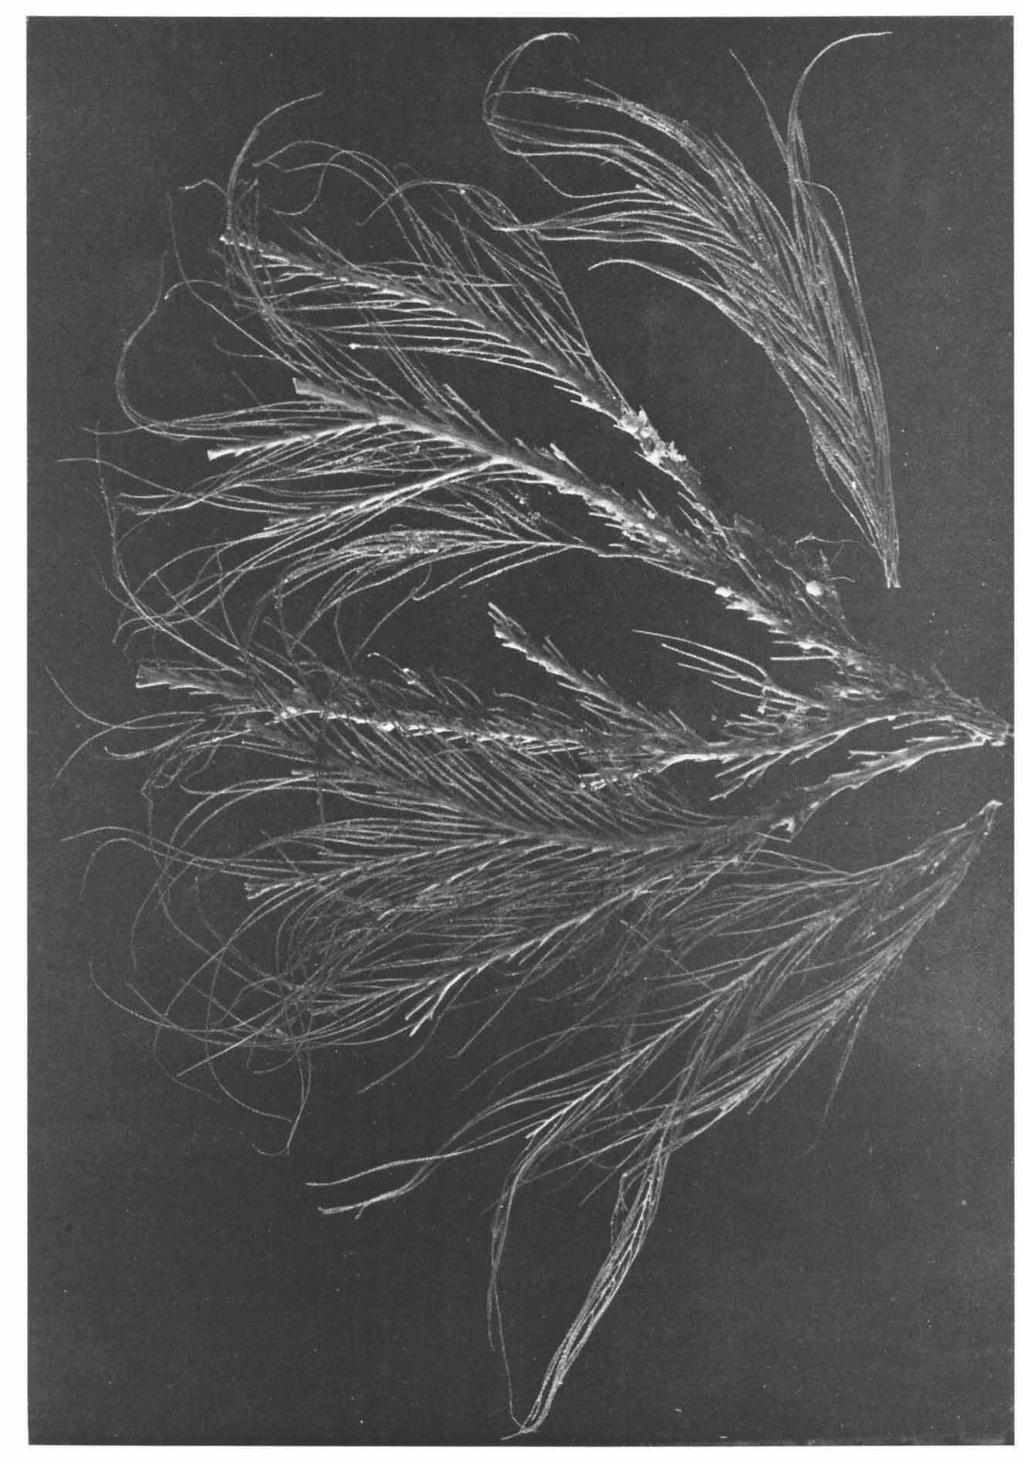 Stephanogorgia diomedea spec, nov,, branches